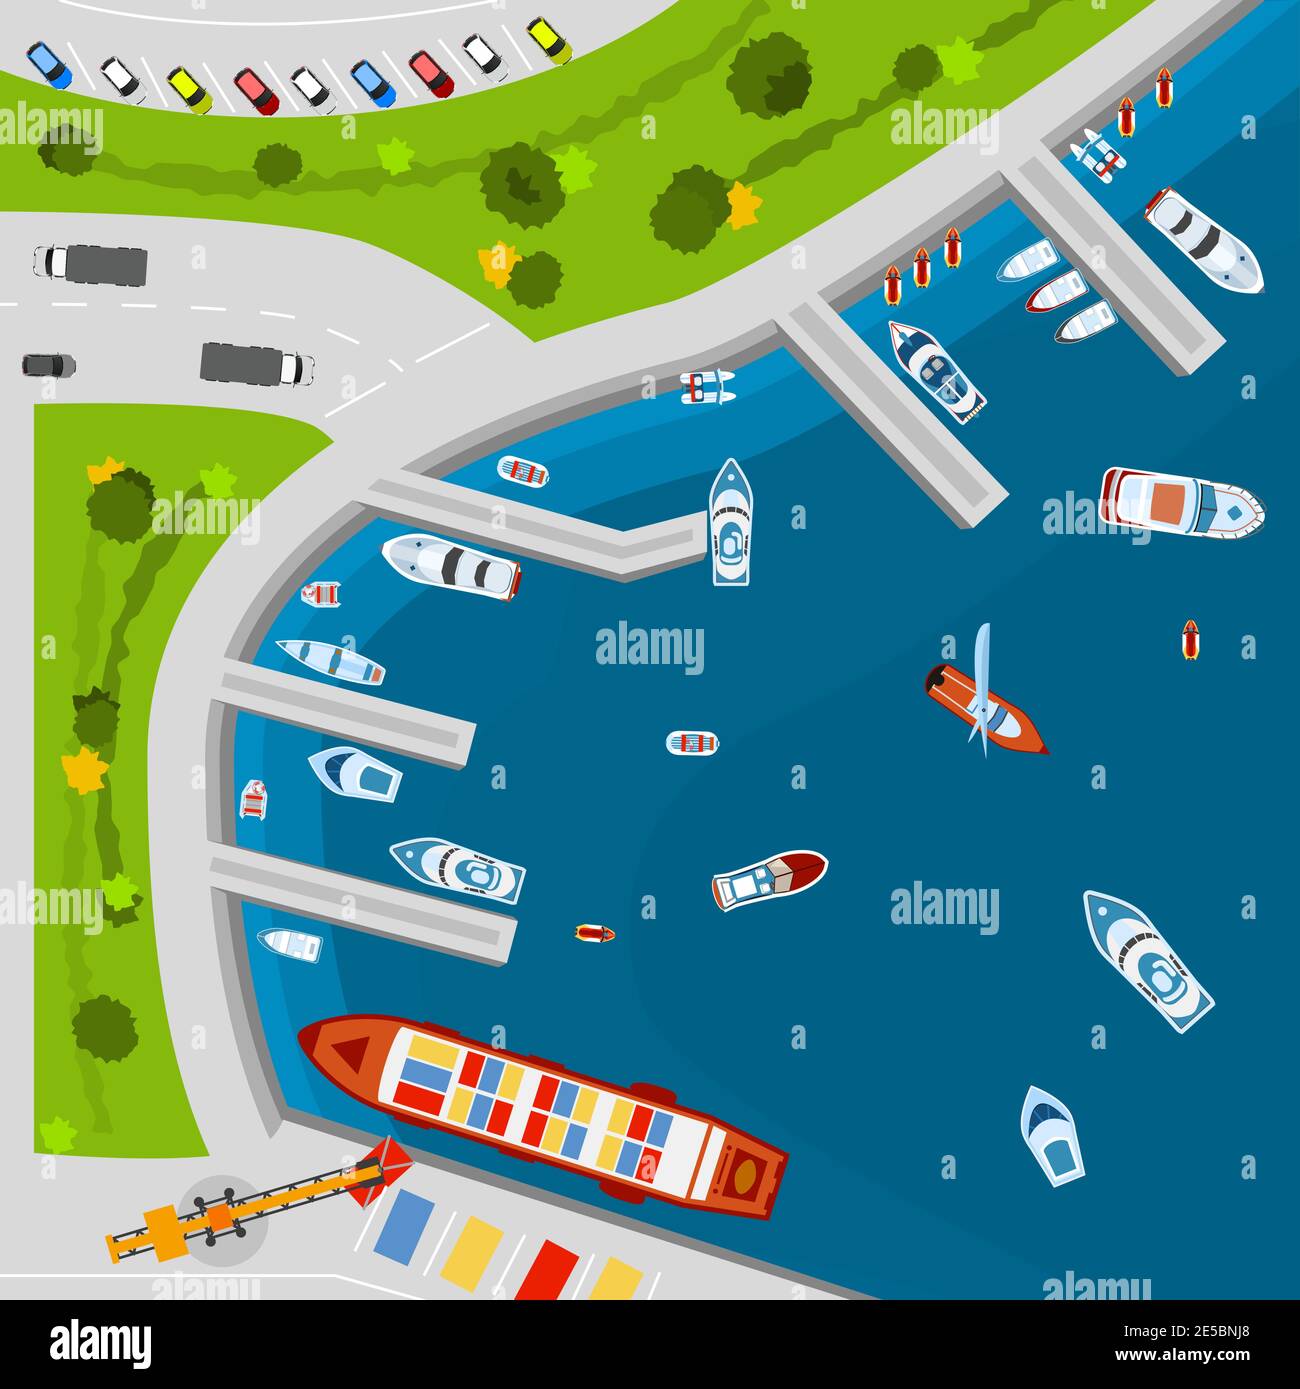 Terminal du port de quai en bord de mer avec vue sur le dessus des navires de cargaison illustration vectorielle abstraite à partir de l'affiche supérieure Illustration de Vecteur